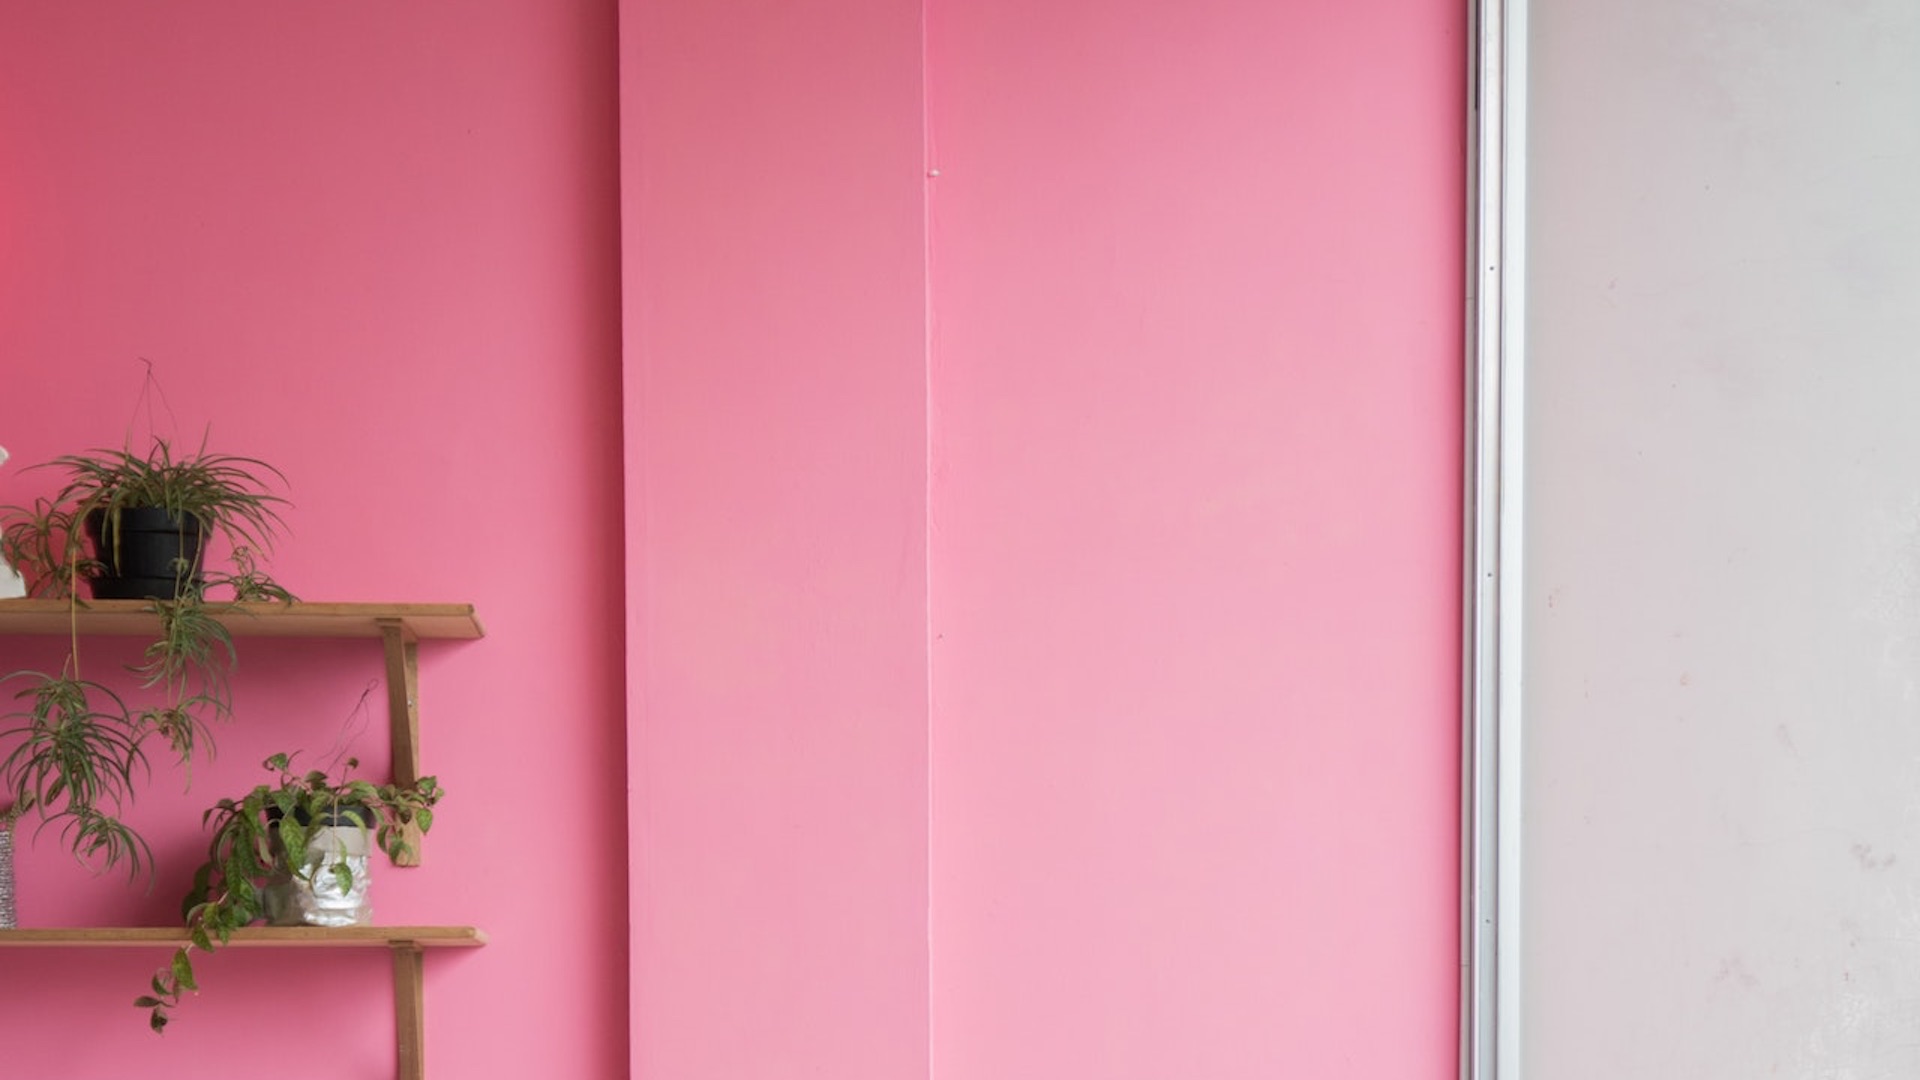 打ち合わせやリモートワークに使える無料のバーチャル背景素材 ピンクの壁と観葉植物 バーチャル背景の素材集 V背景